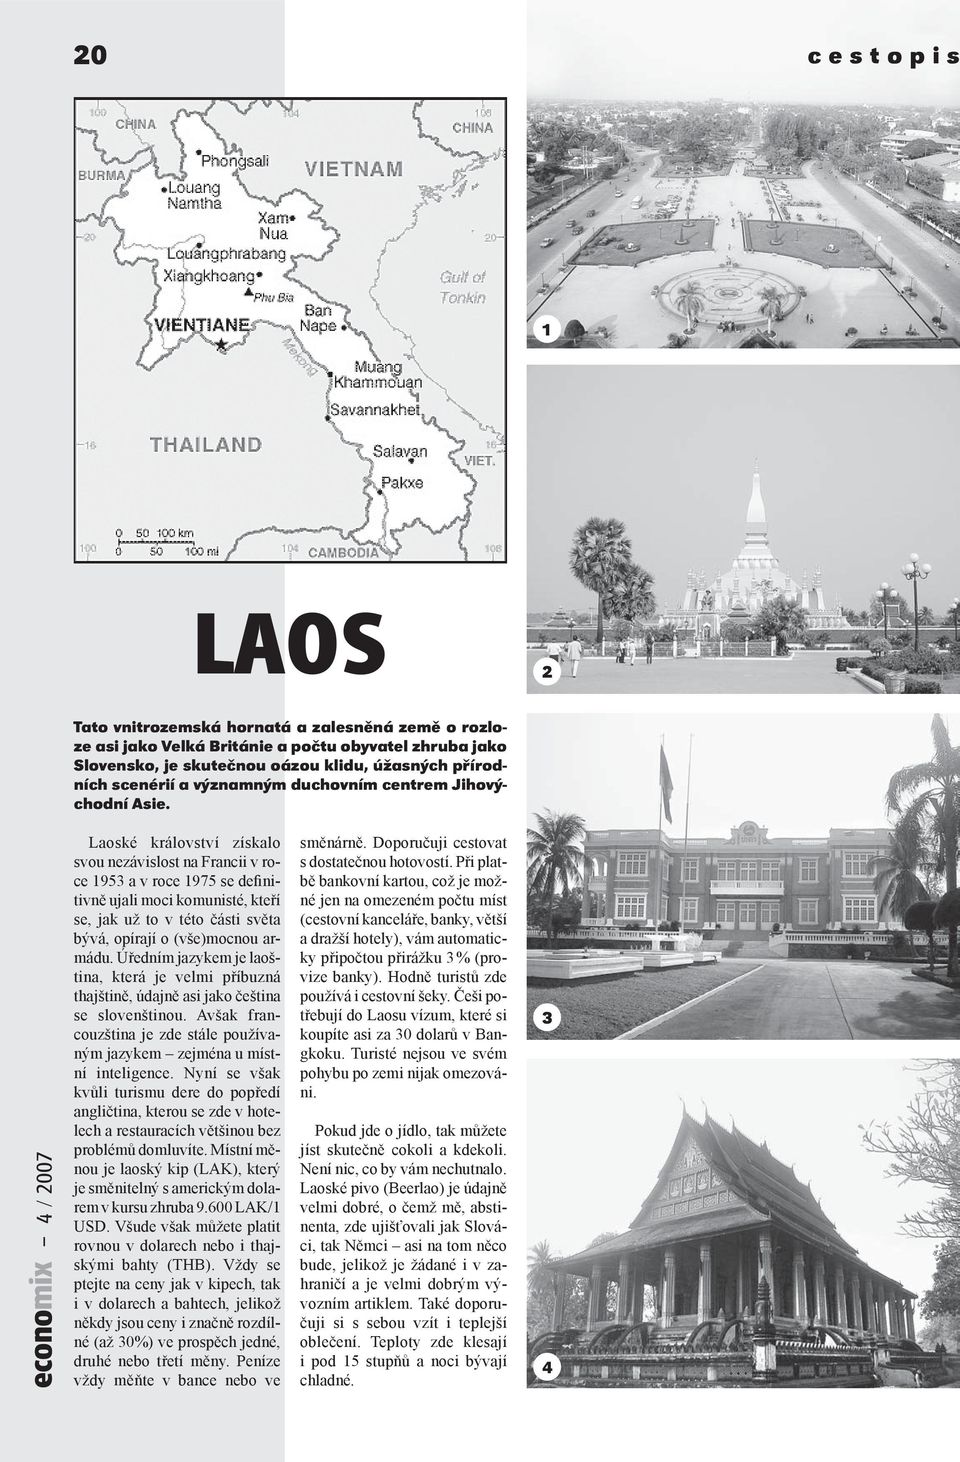 Laoské království získalo svou nezávislost na Francii v roce 1953 a v roce 1975 se definitivně ujali moci komunisté, kteří se, jak už to v této části světa bývá, opírají o (vše)mocnou armádu.